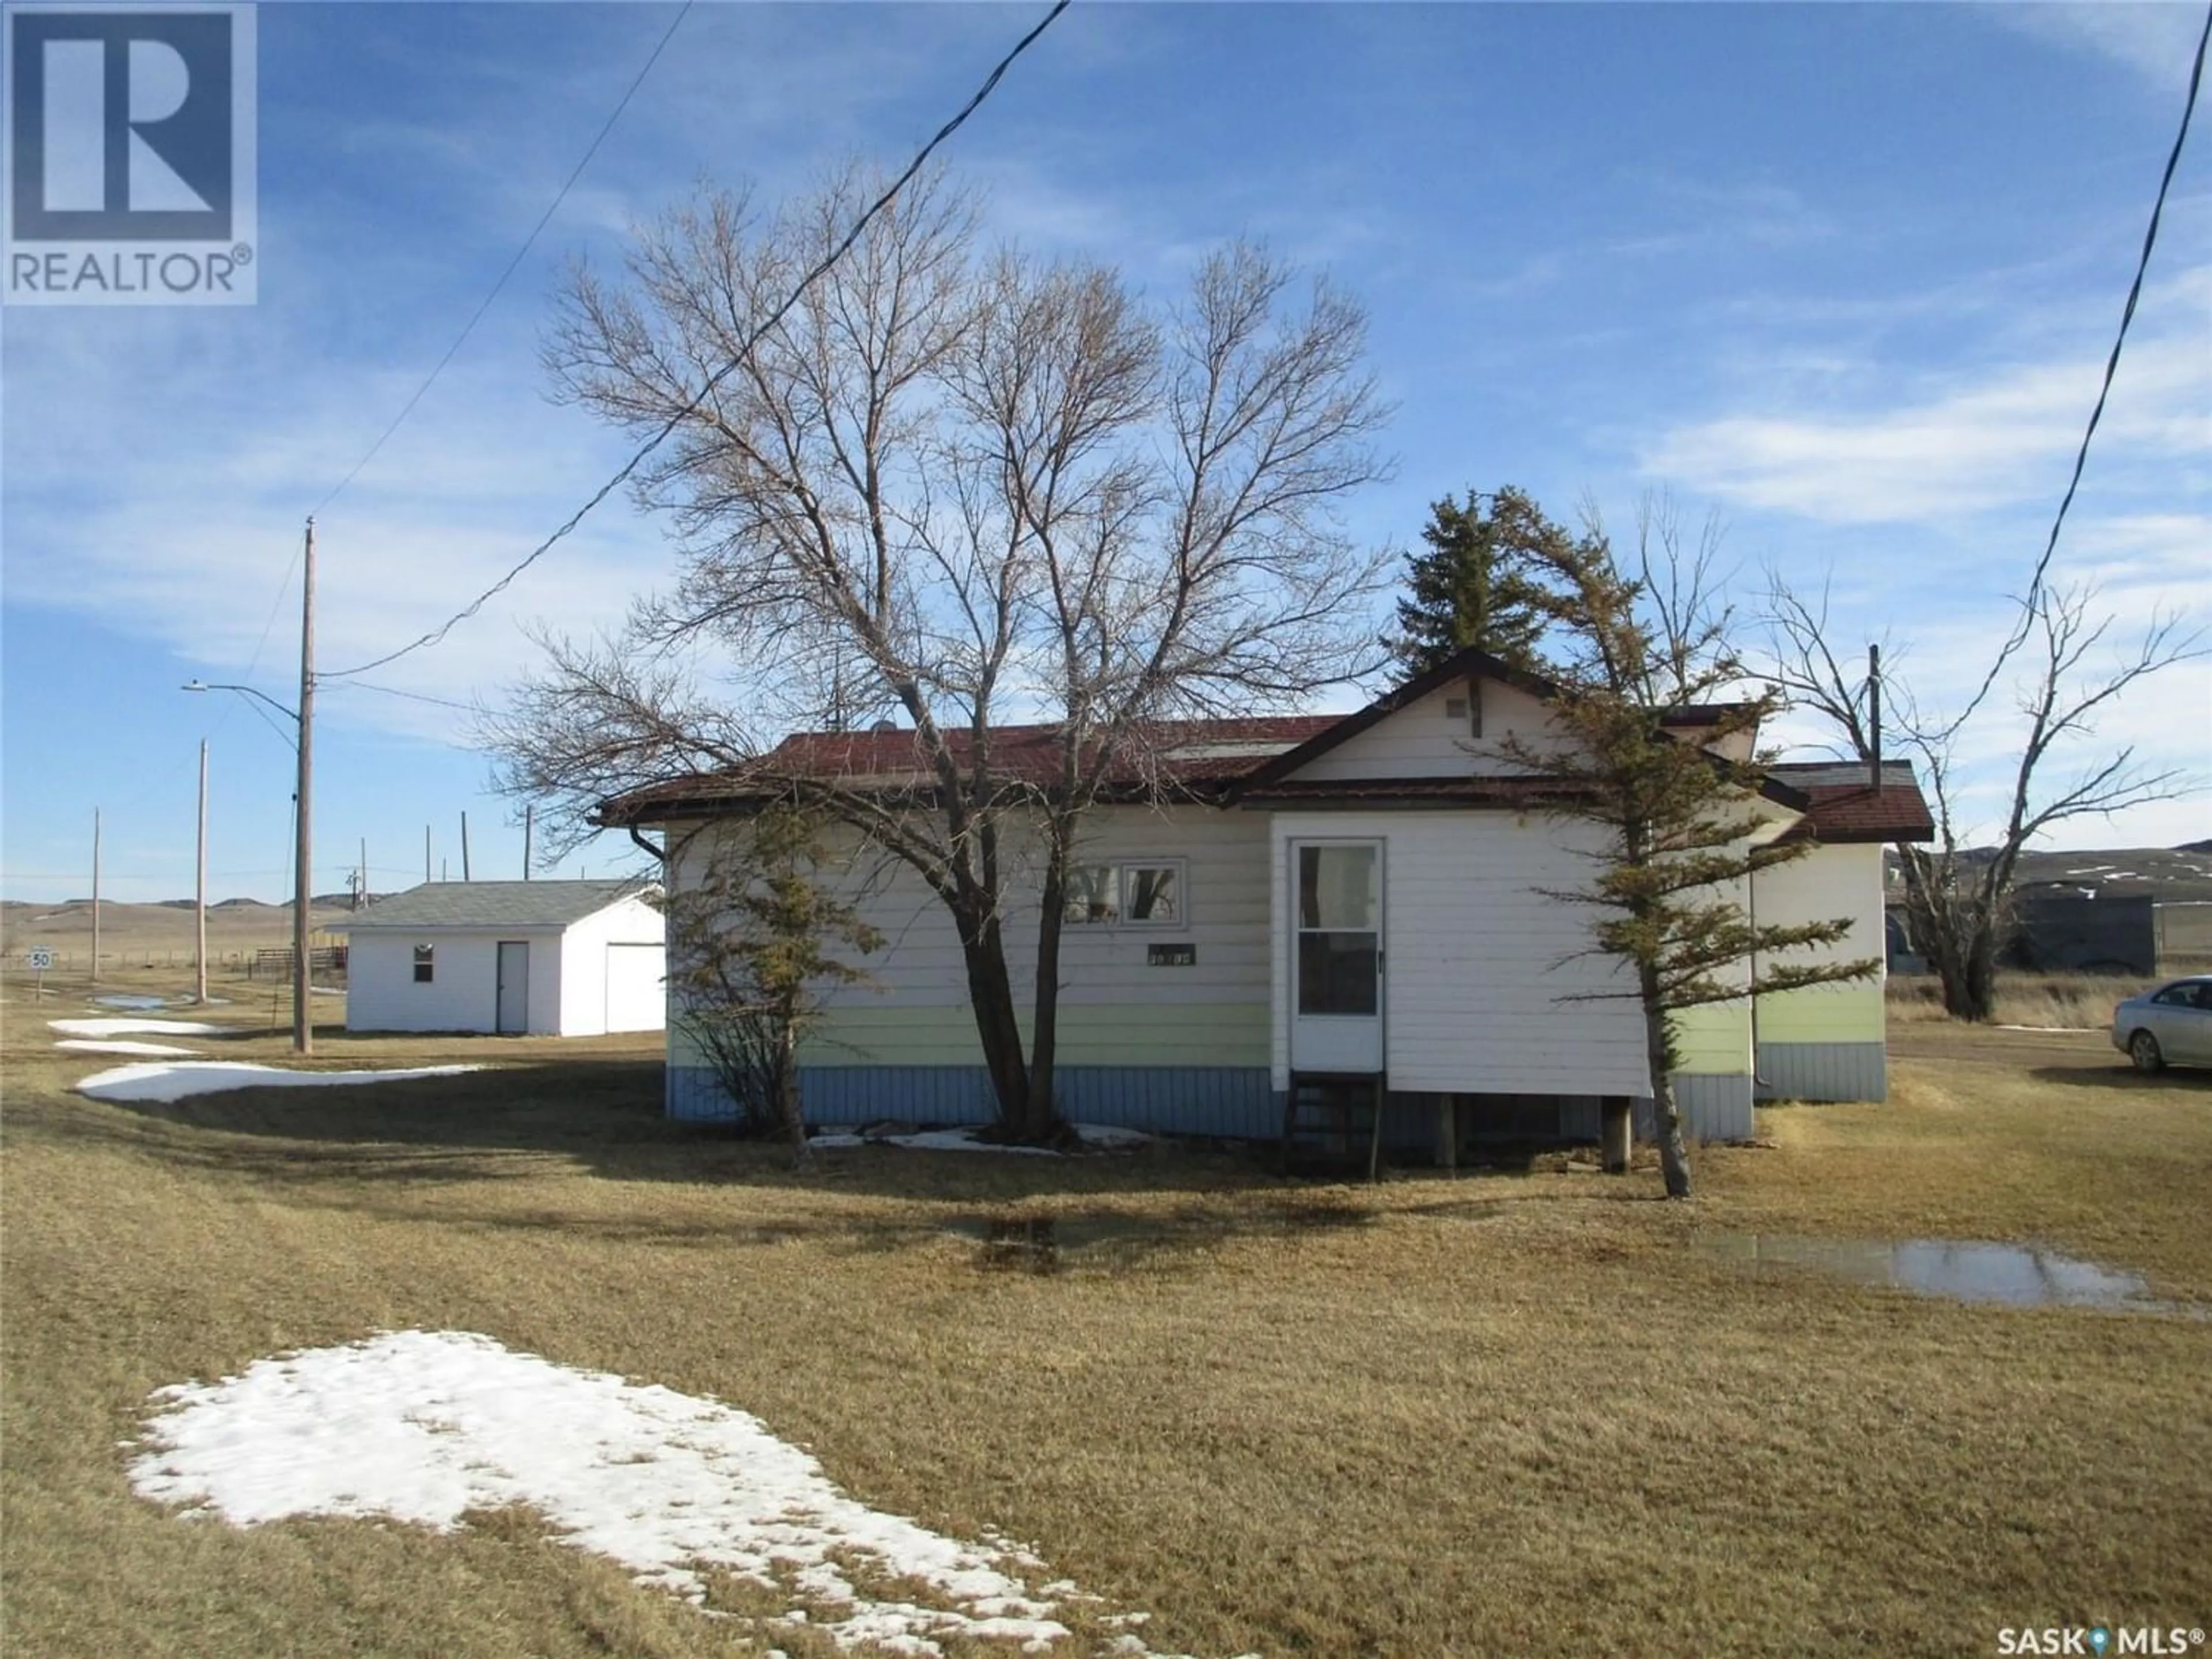 Frontside or backside of a home for 200 - #2 highway, Rockglen Saskatchewan S0H3R0